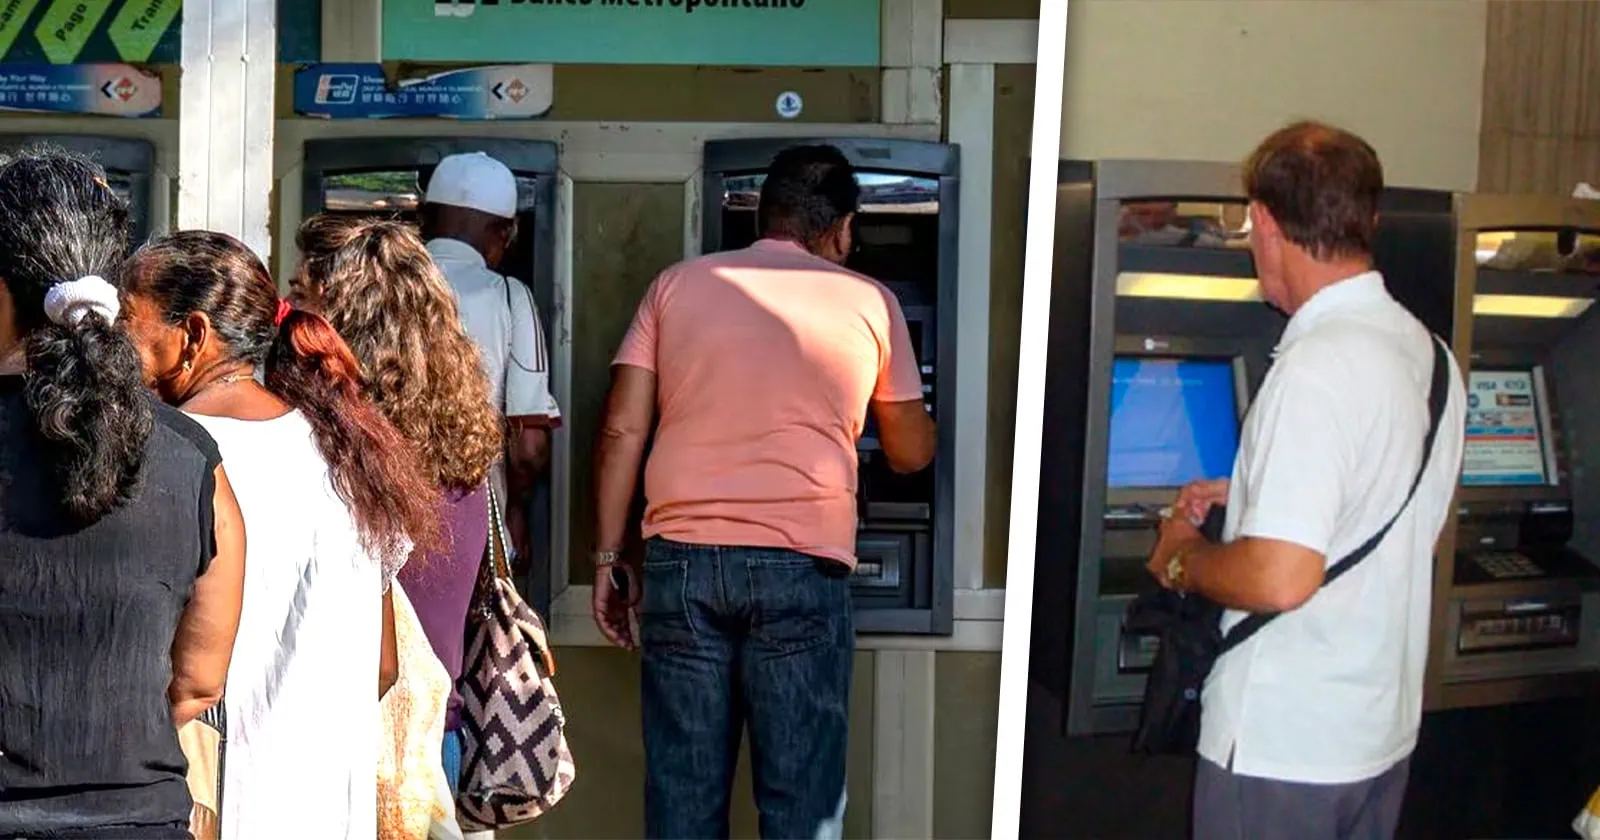 En Esta Provincia de Cuba los Cajeros Automáticos Dejarán de Prestar Servicios: Conozca los Pormenores en este Artículo